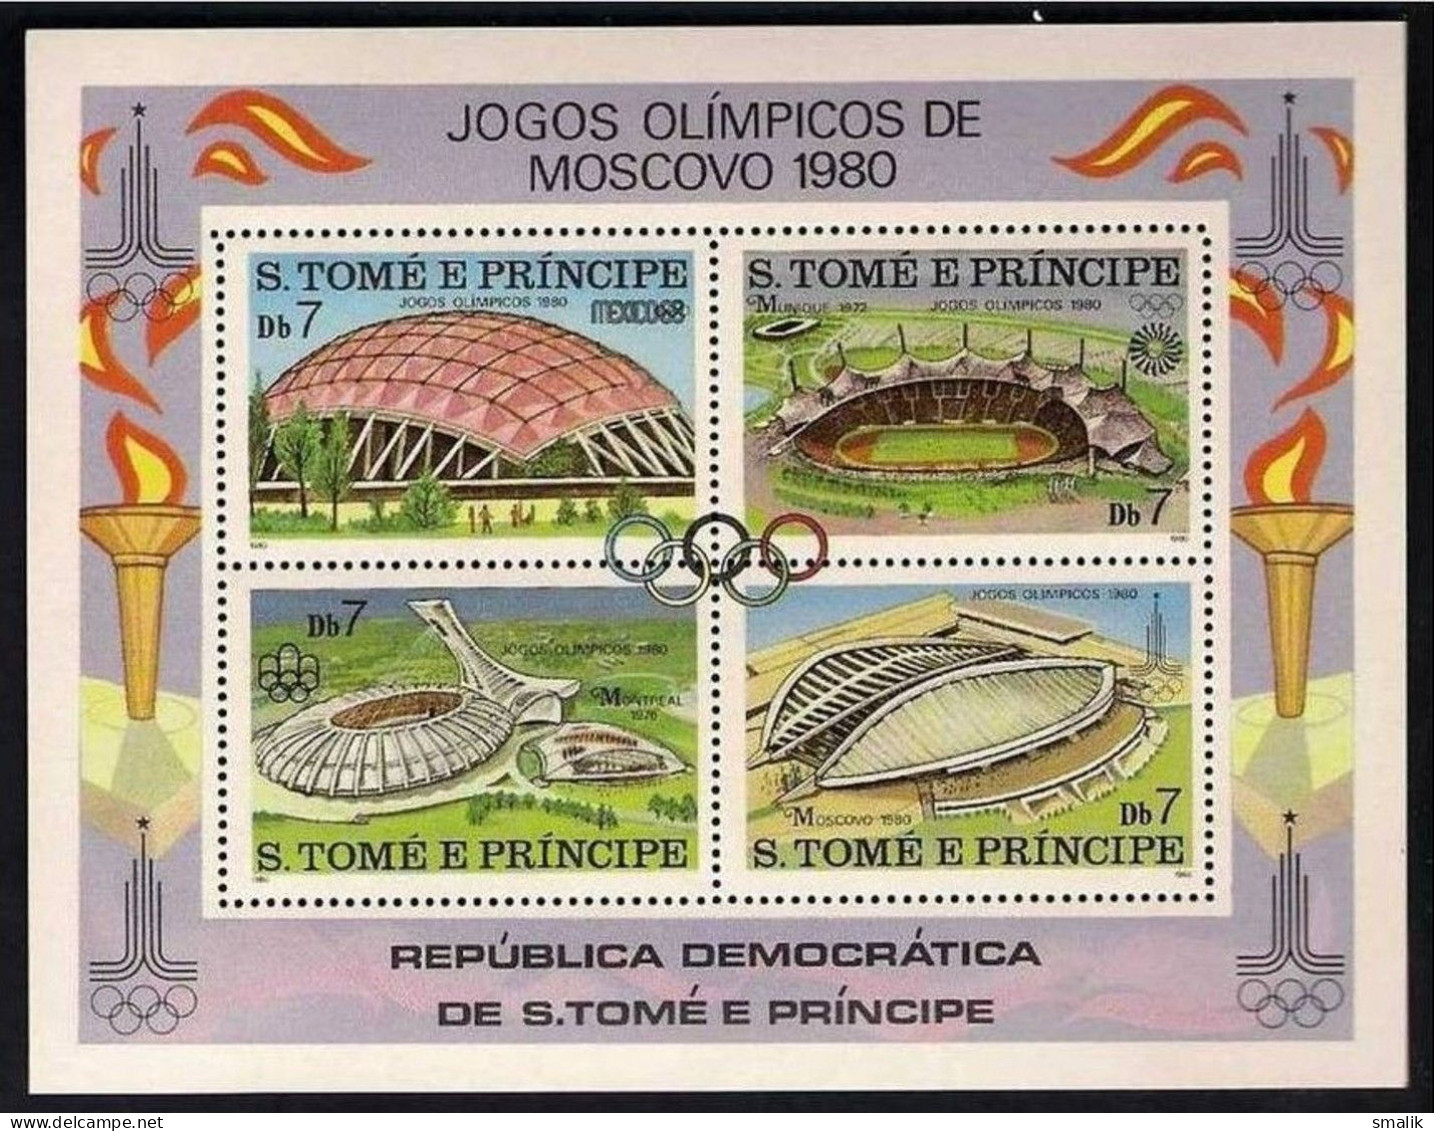 S. TOME E PRINCIPE SAO 1980 - Moscow Olympic Games, Stadium, Miniature Sheet MNH - Sao Tomé E Principe